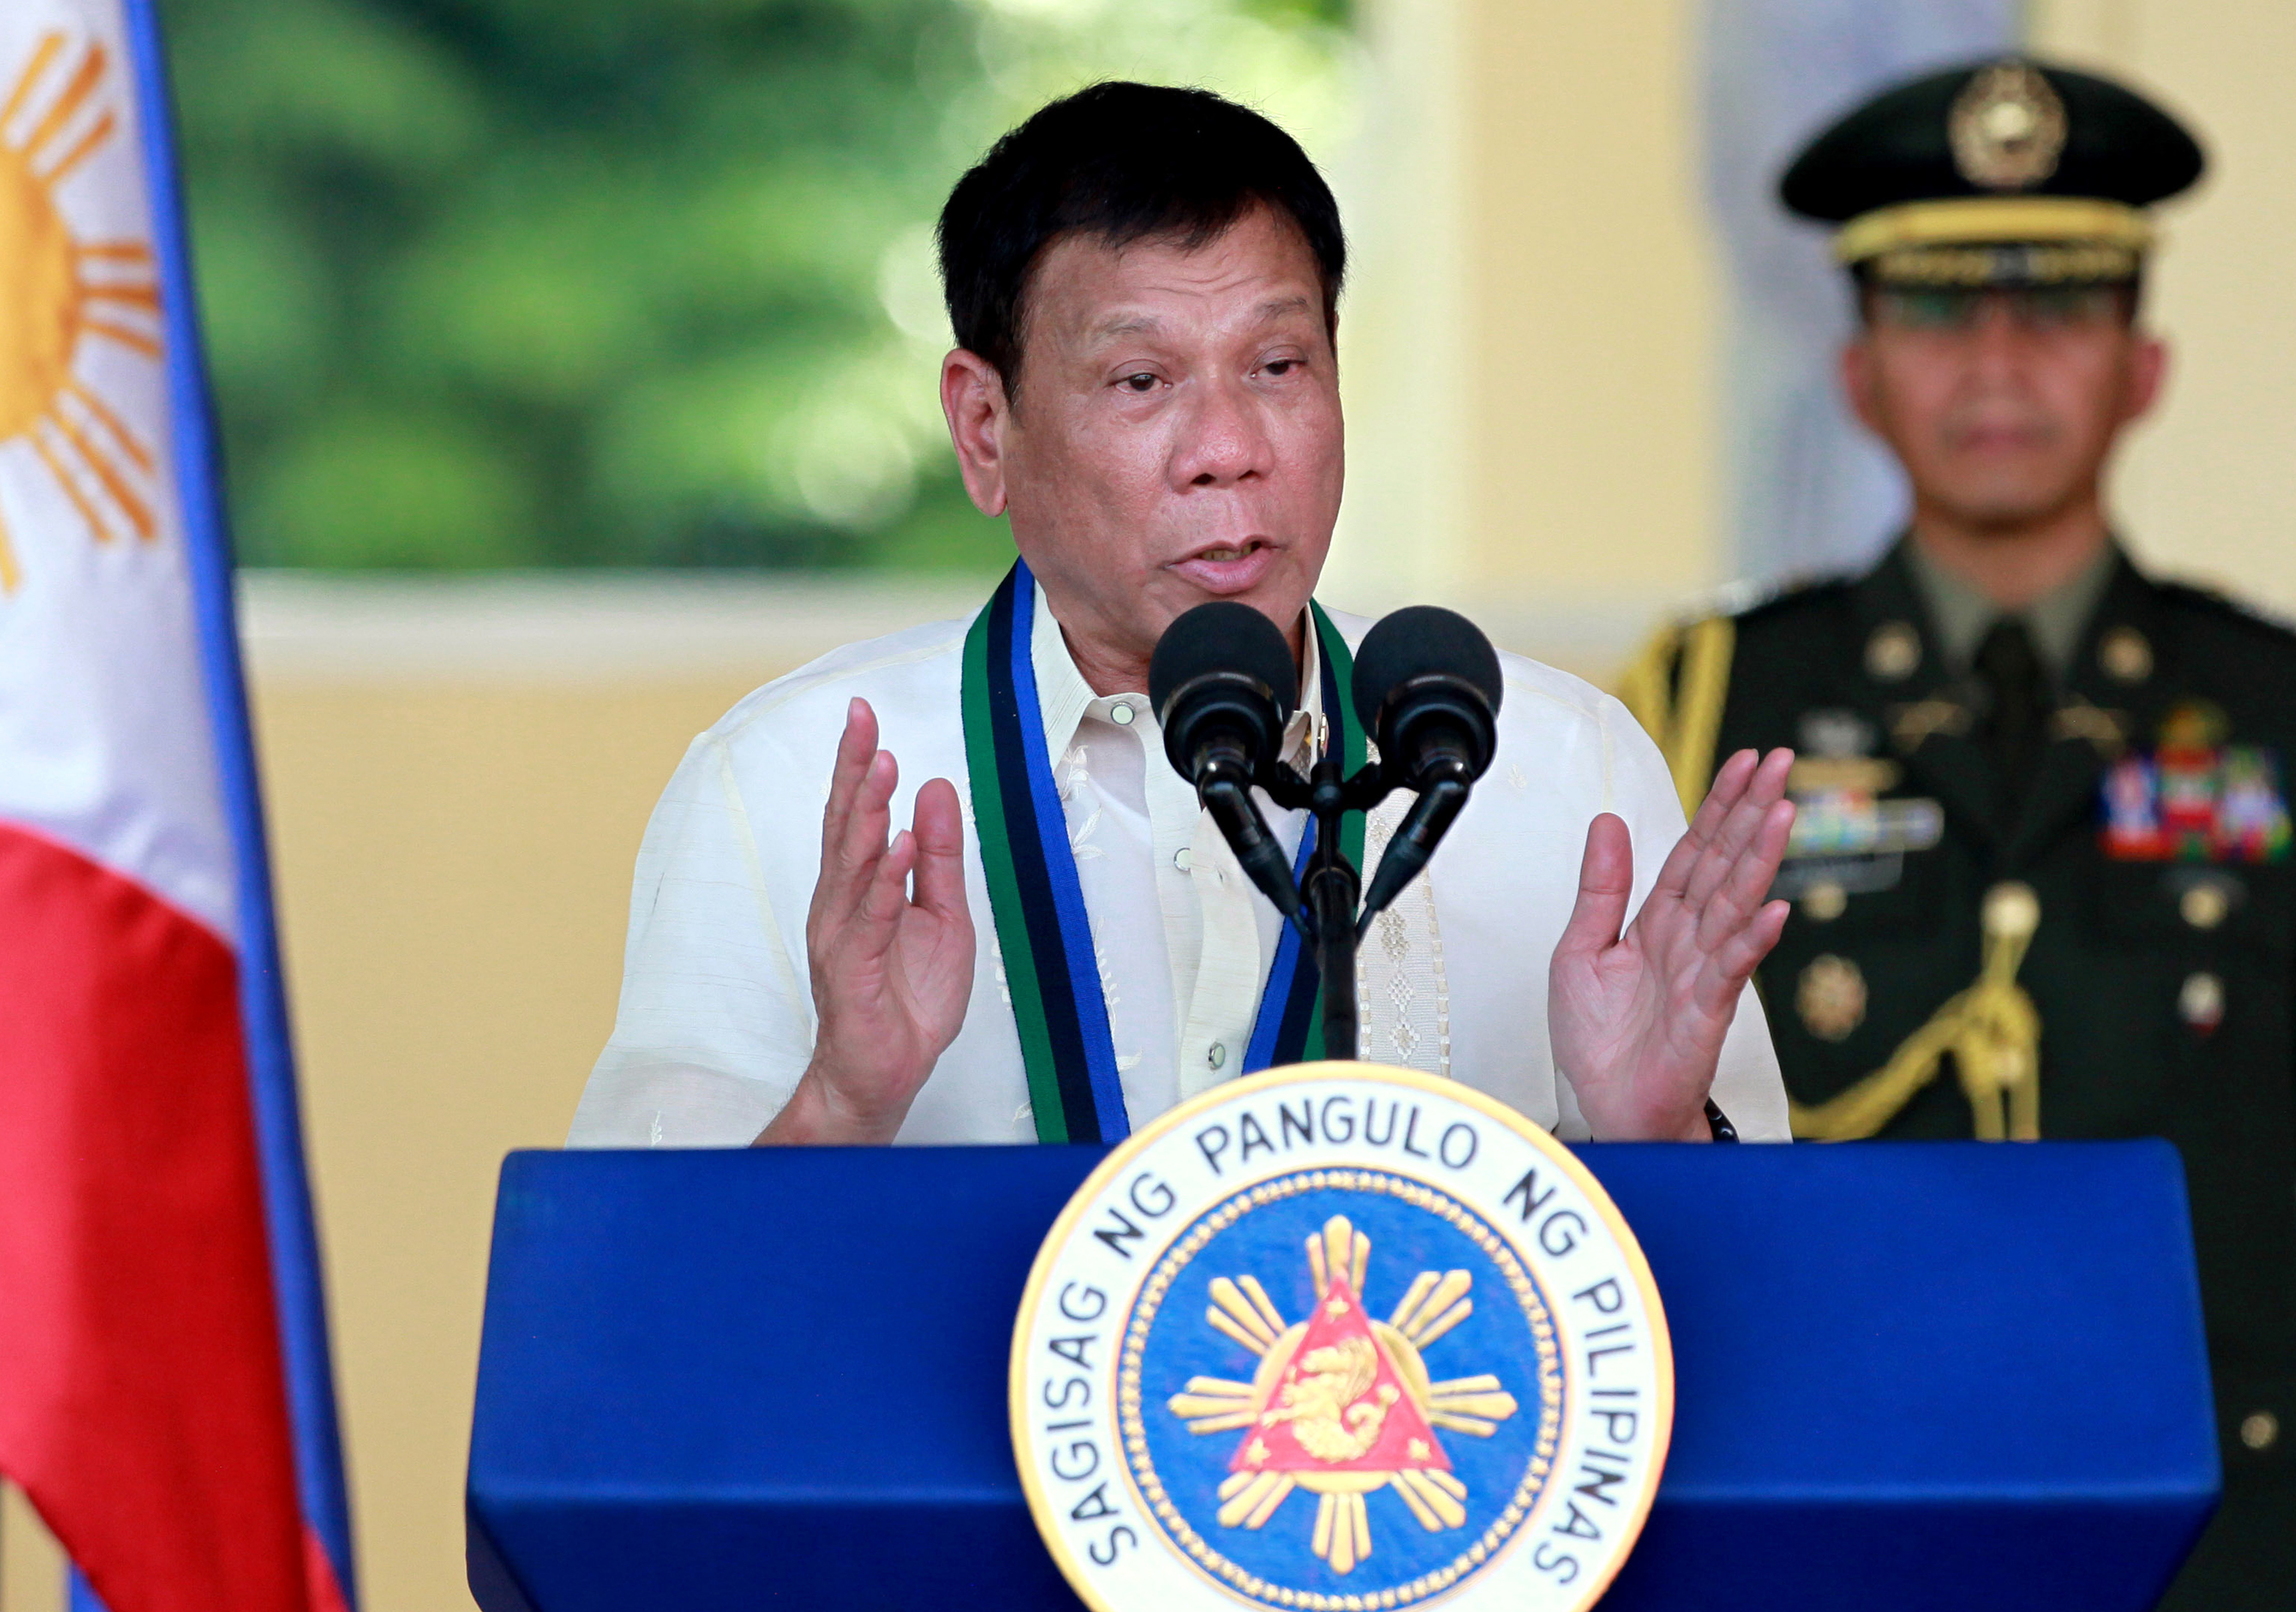 Philippine President Rodrigo Duterte addresses the troops during a military ceremony in suburban Quezon city, northeast of Manila, Philippines. (Bullit Marquez—AP)